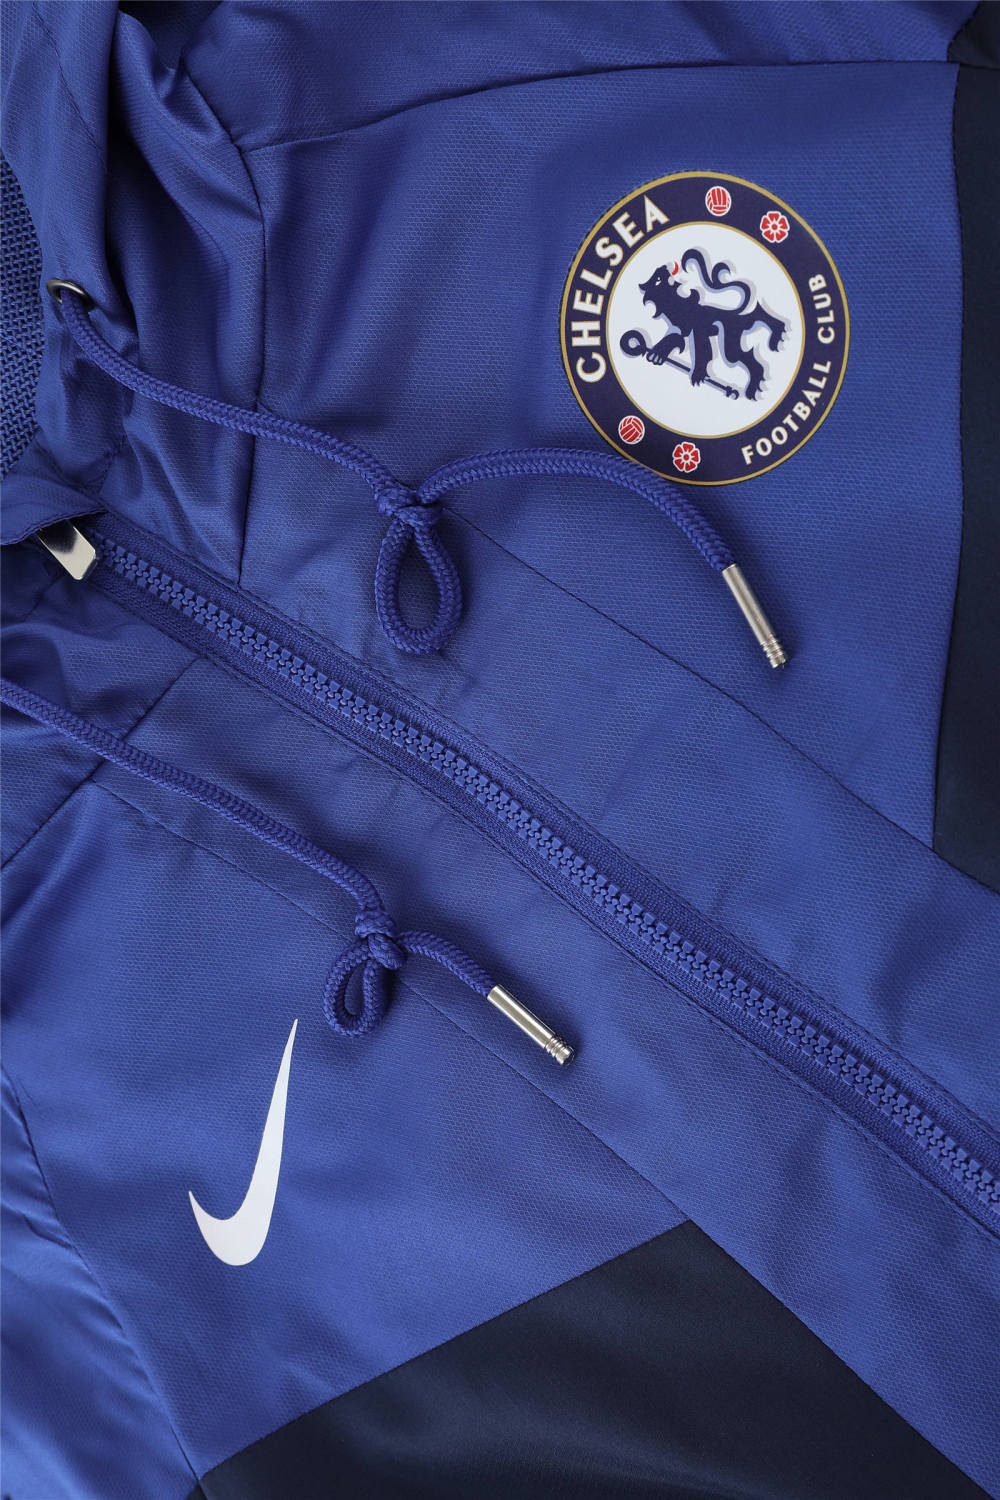 Chelsea All Weather Windrunner Soccer Jacket Blue 2022/23 Men's